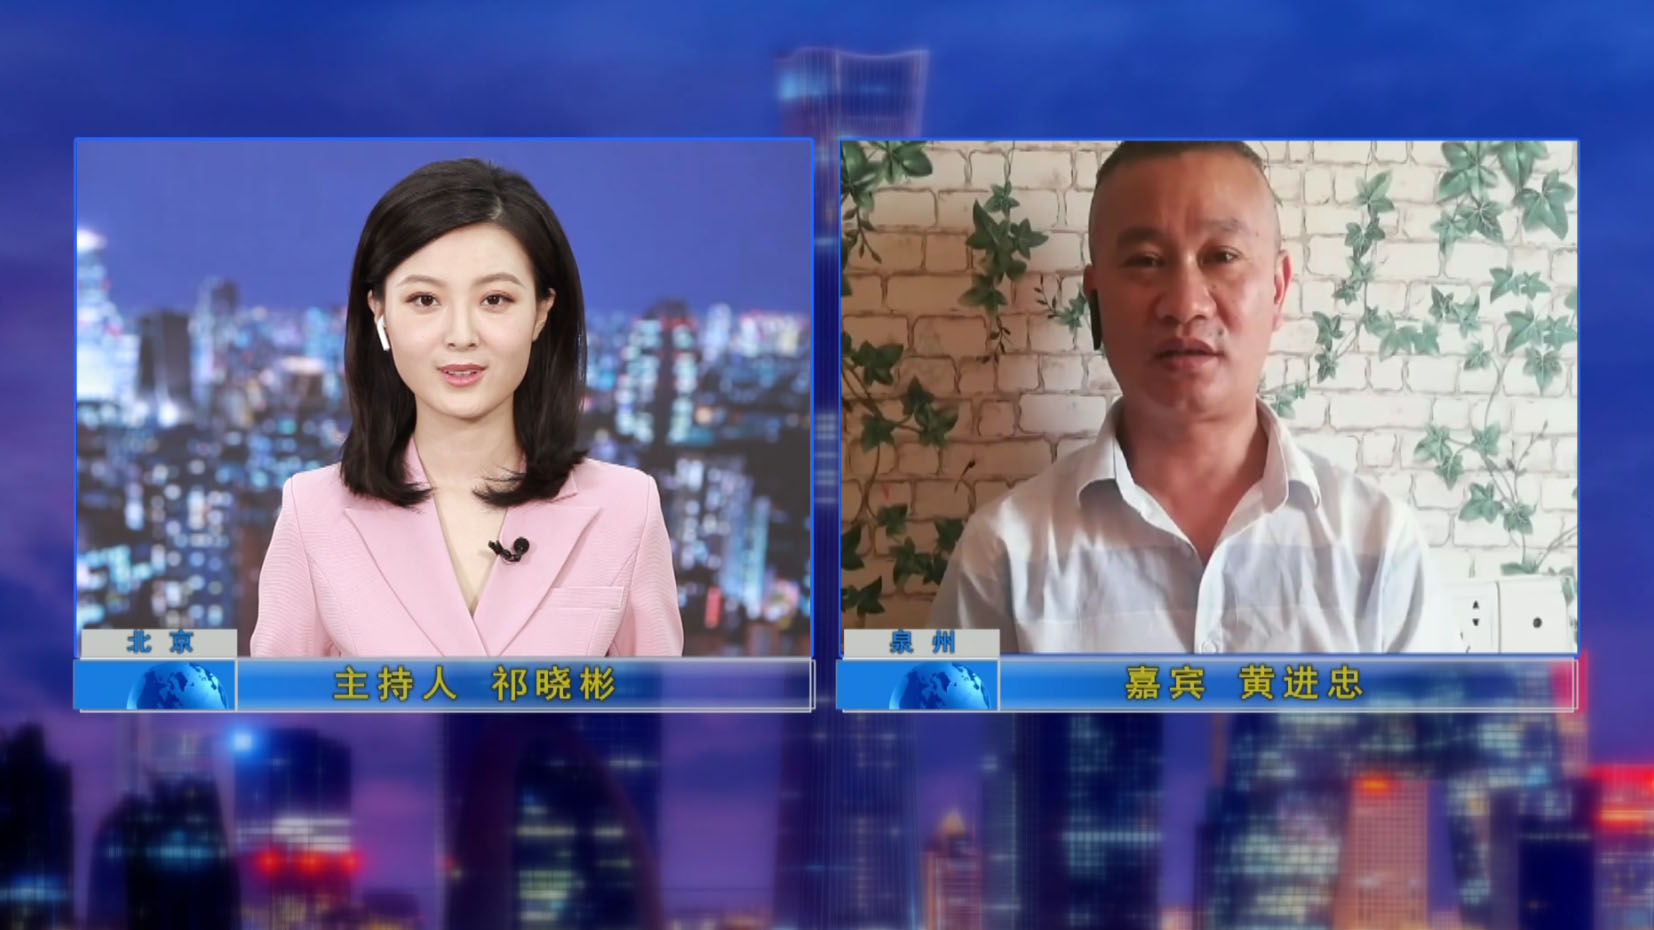 सामान्य प्रबंधक को टीवी कार्यक्रम "क्रेडिट चीन" द्वारा साक्षात्कार दिया गया था